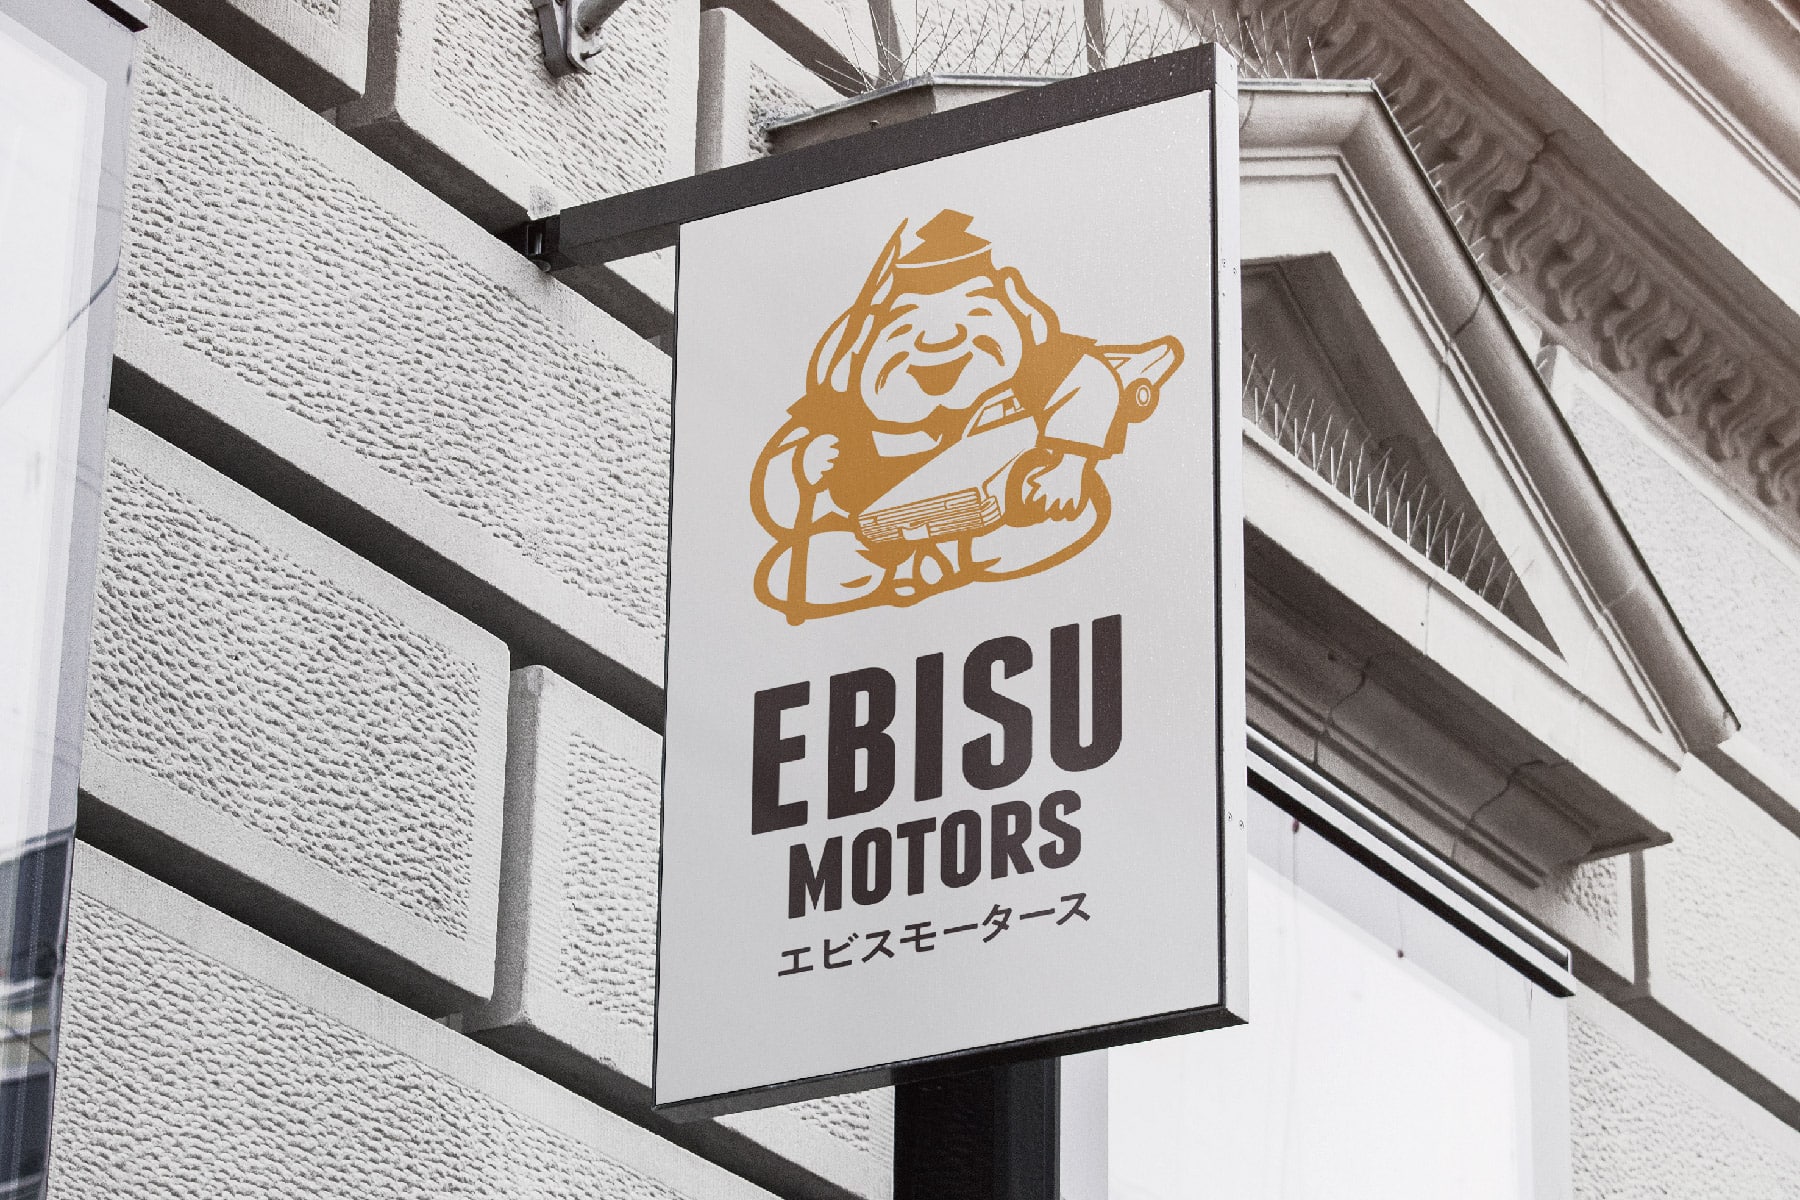 EBISU MOTORS　近所で有名な車の激安店看板